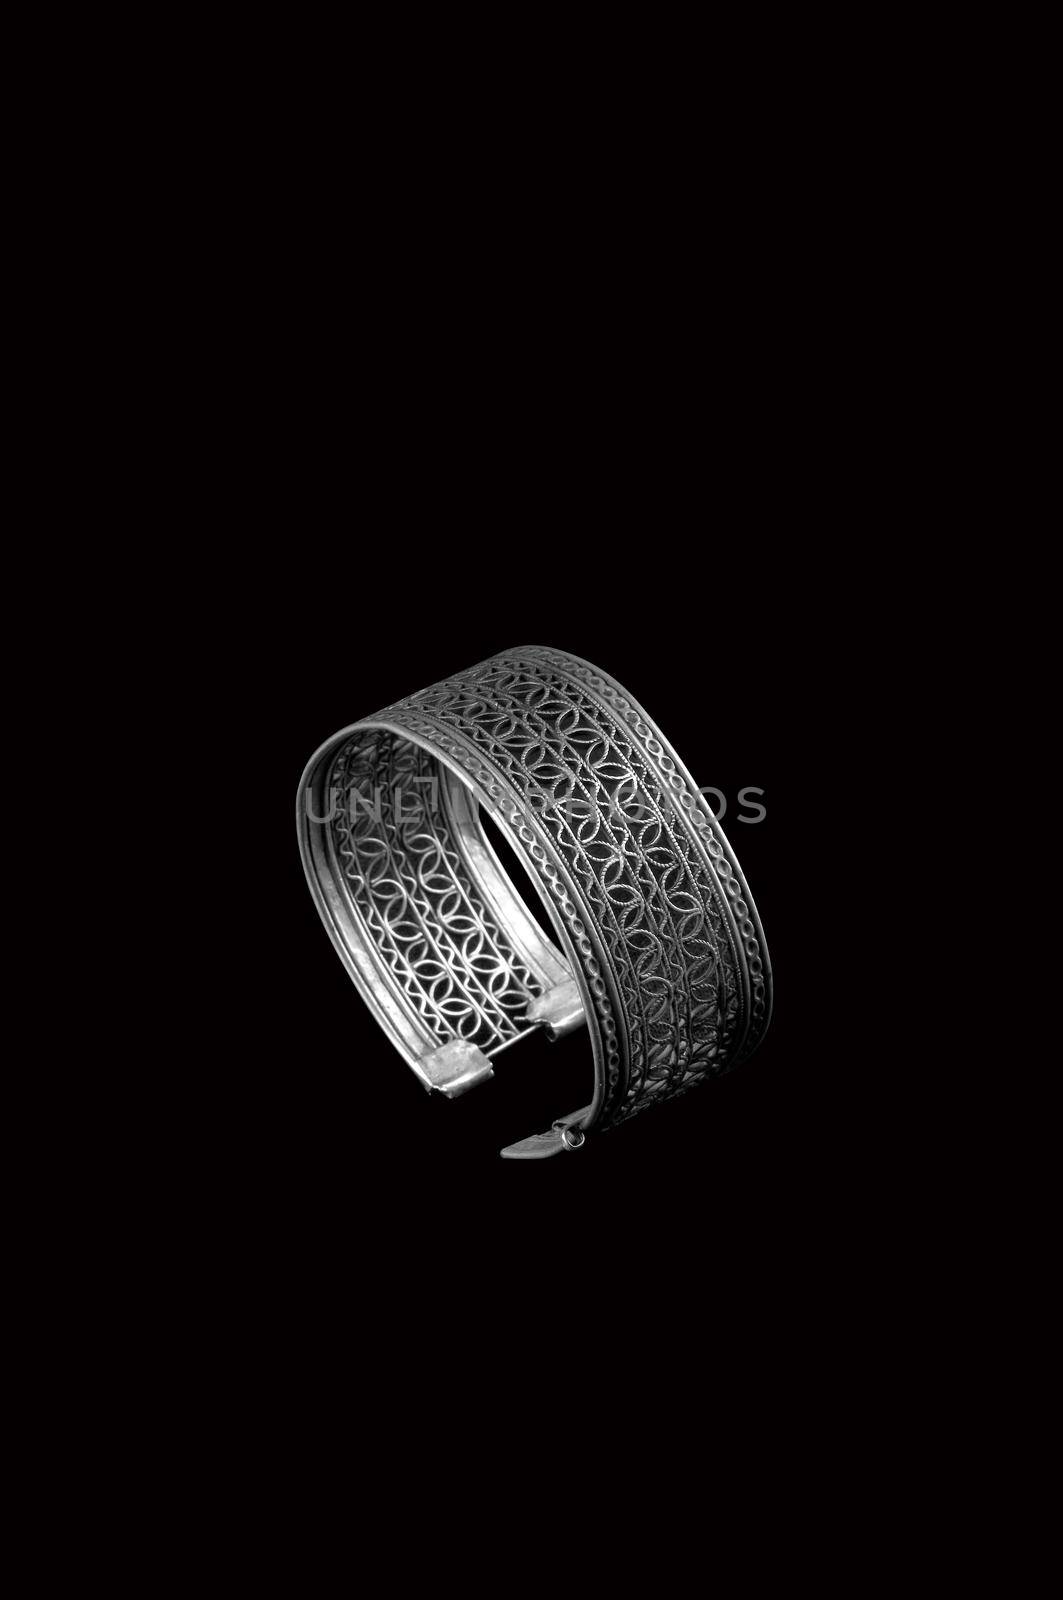 silver bracelet on black background by A_Karim